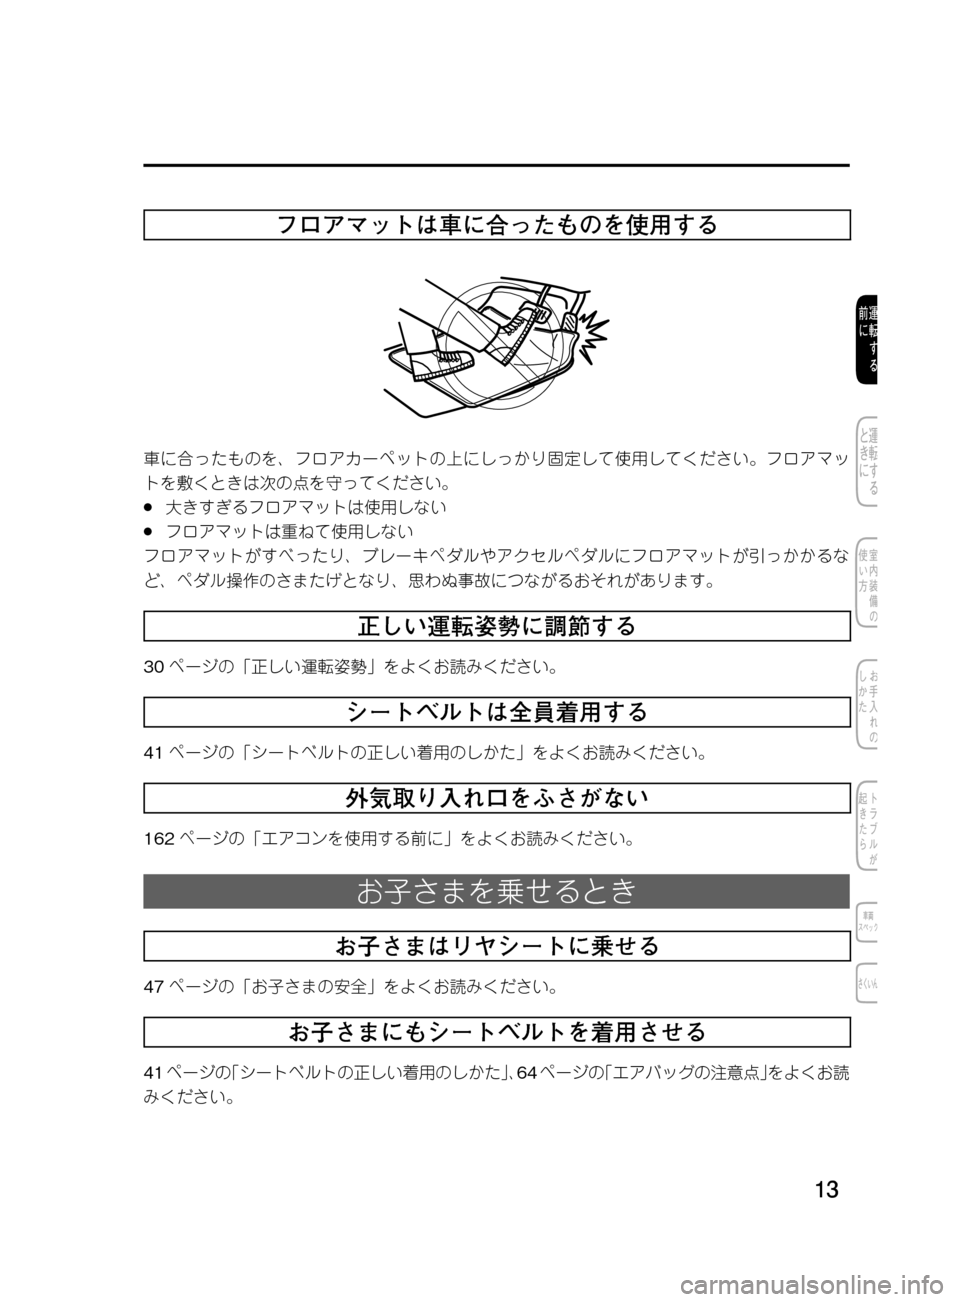 MAZDA MODEL DEMIO 2011  デミオ｜取扱説明書 (in Japanese) ��
��P�S�N��/�P���% 